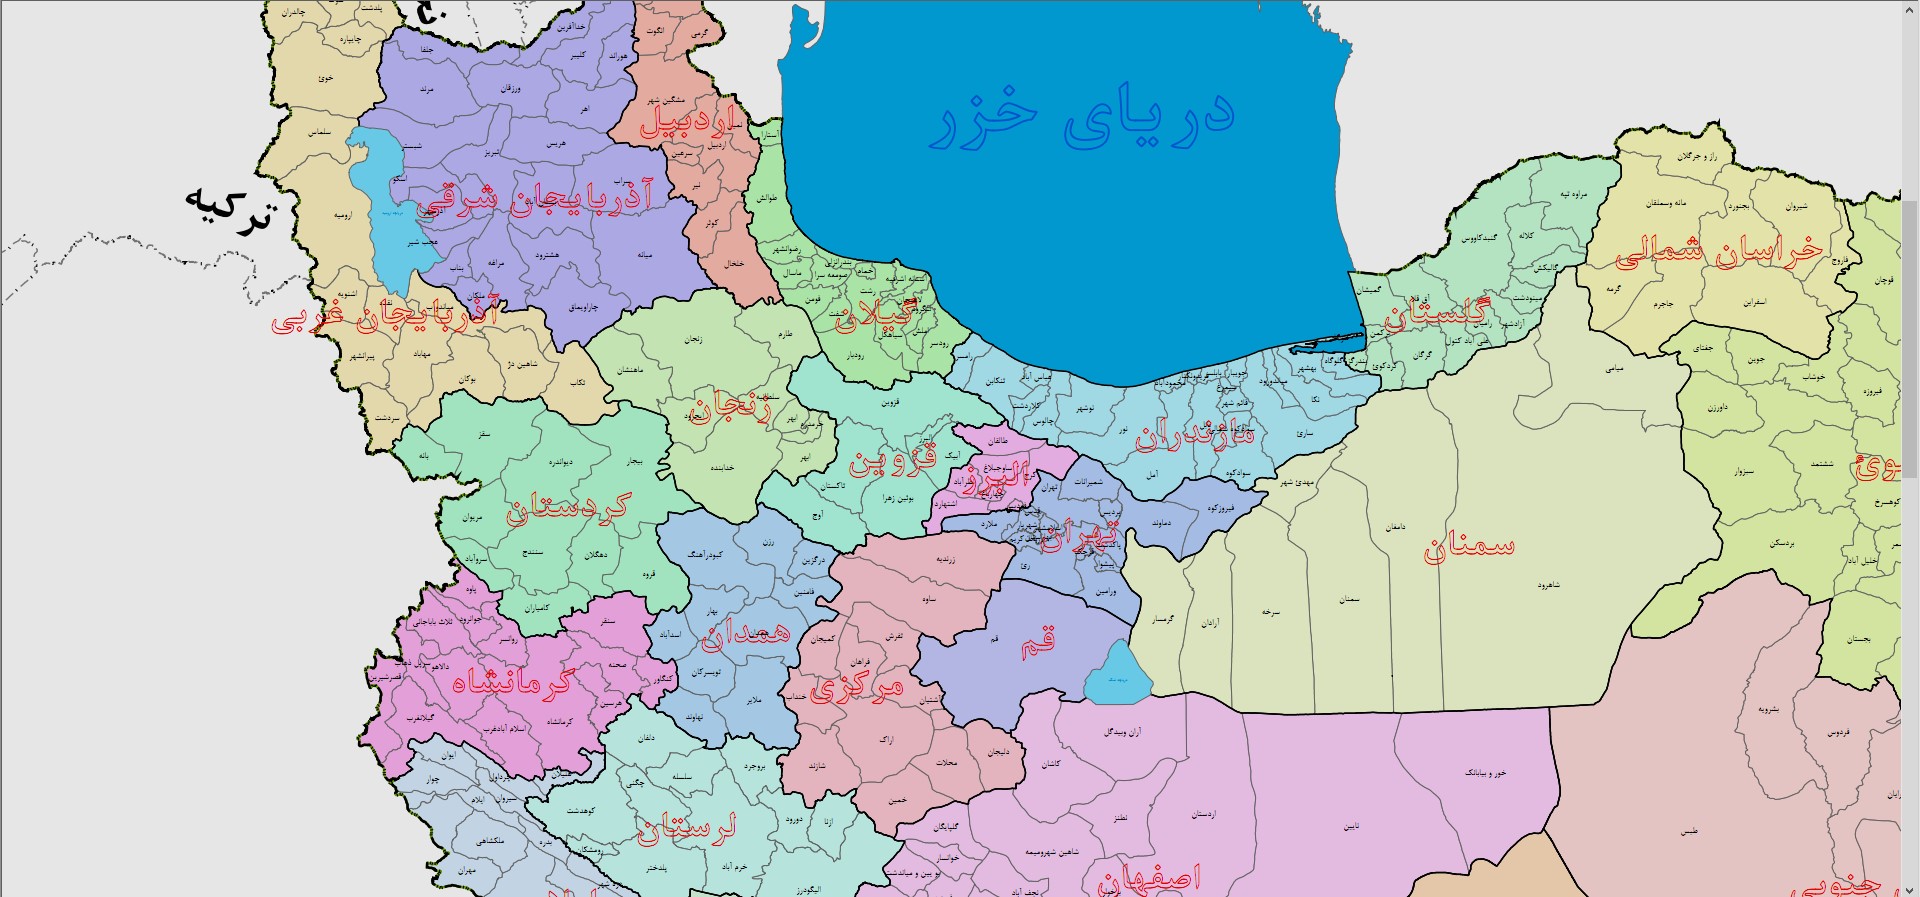 نقشه ایران به تفکیک استان ها و شهرستان ها با زوم نامحدود